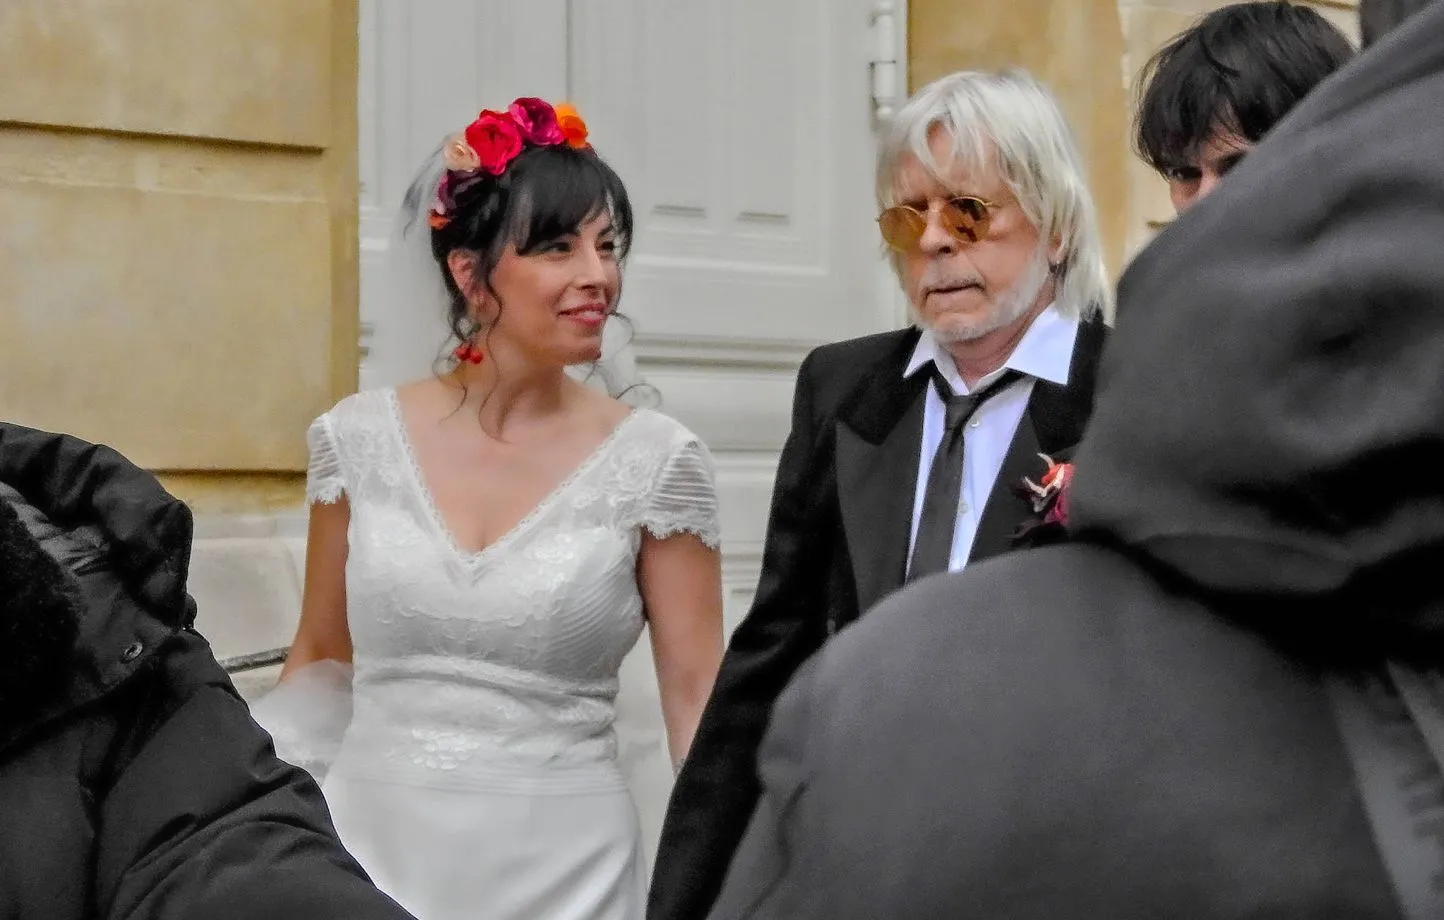 Renaud marié à Cerise : sa fille Lolita absente "Tout cela est compliqué pour elle…"